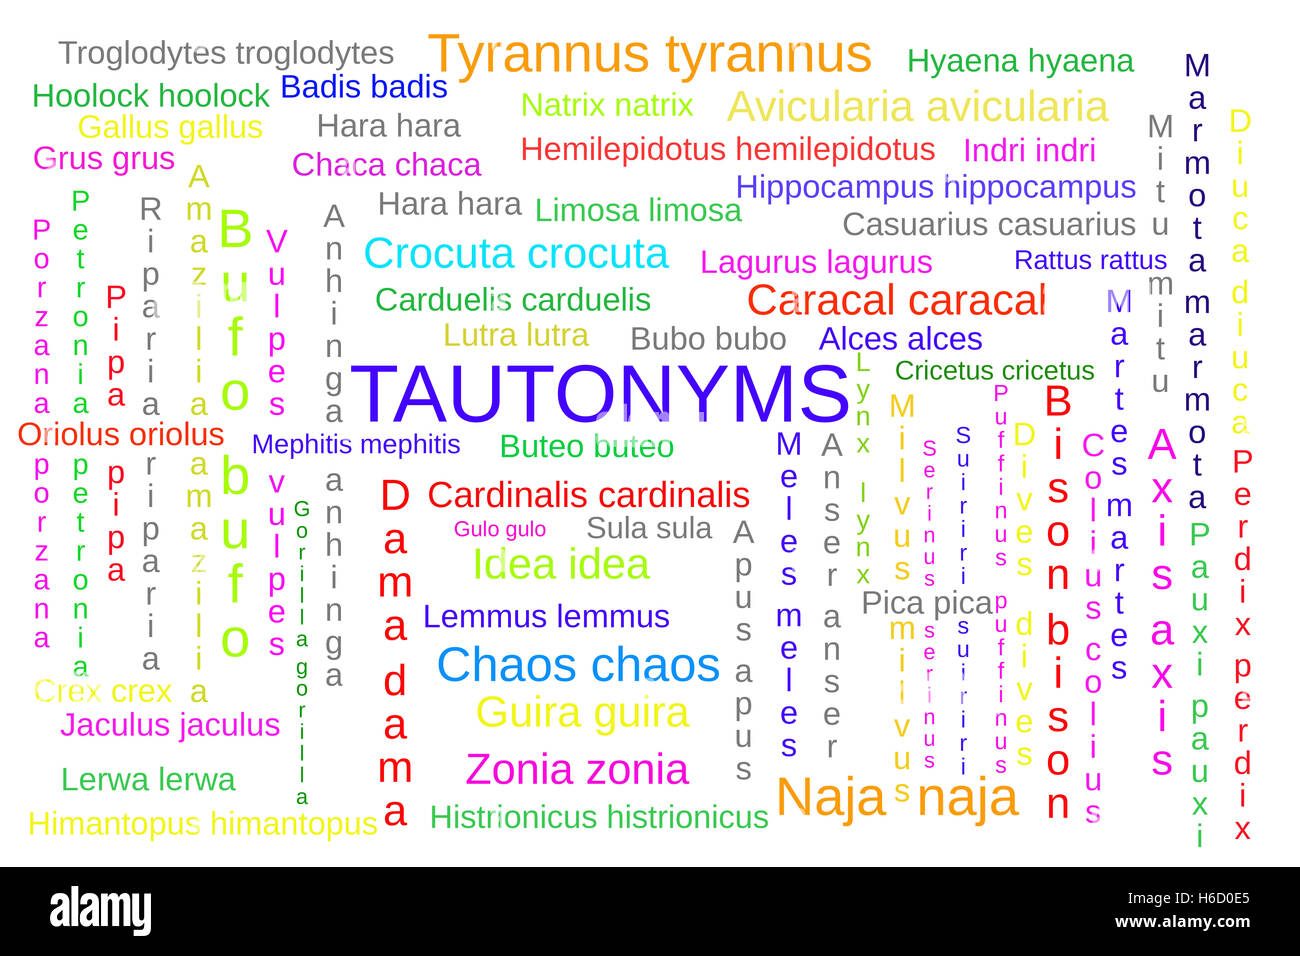 Wort-Wolke von Tautonyme, wissenschaftlichen Namen, in dem das gleiche Wort für Gattungen und Arten verwendet wird; auf weiß Stockfoto